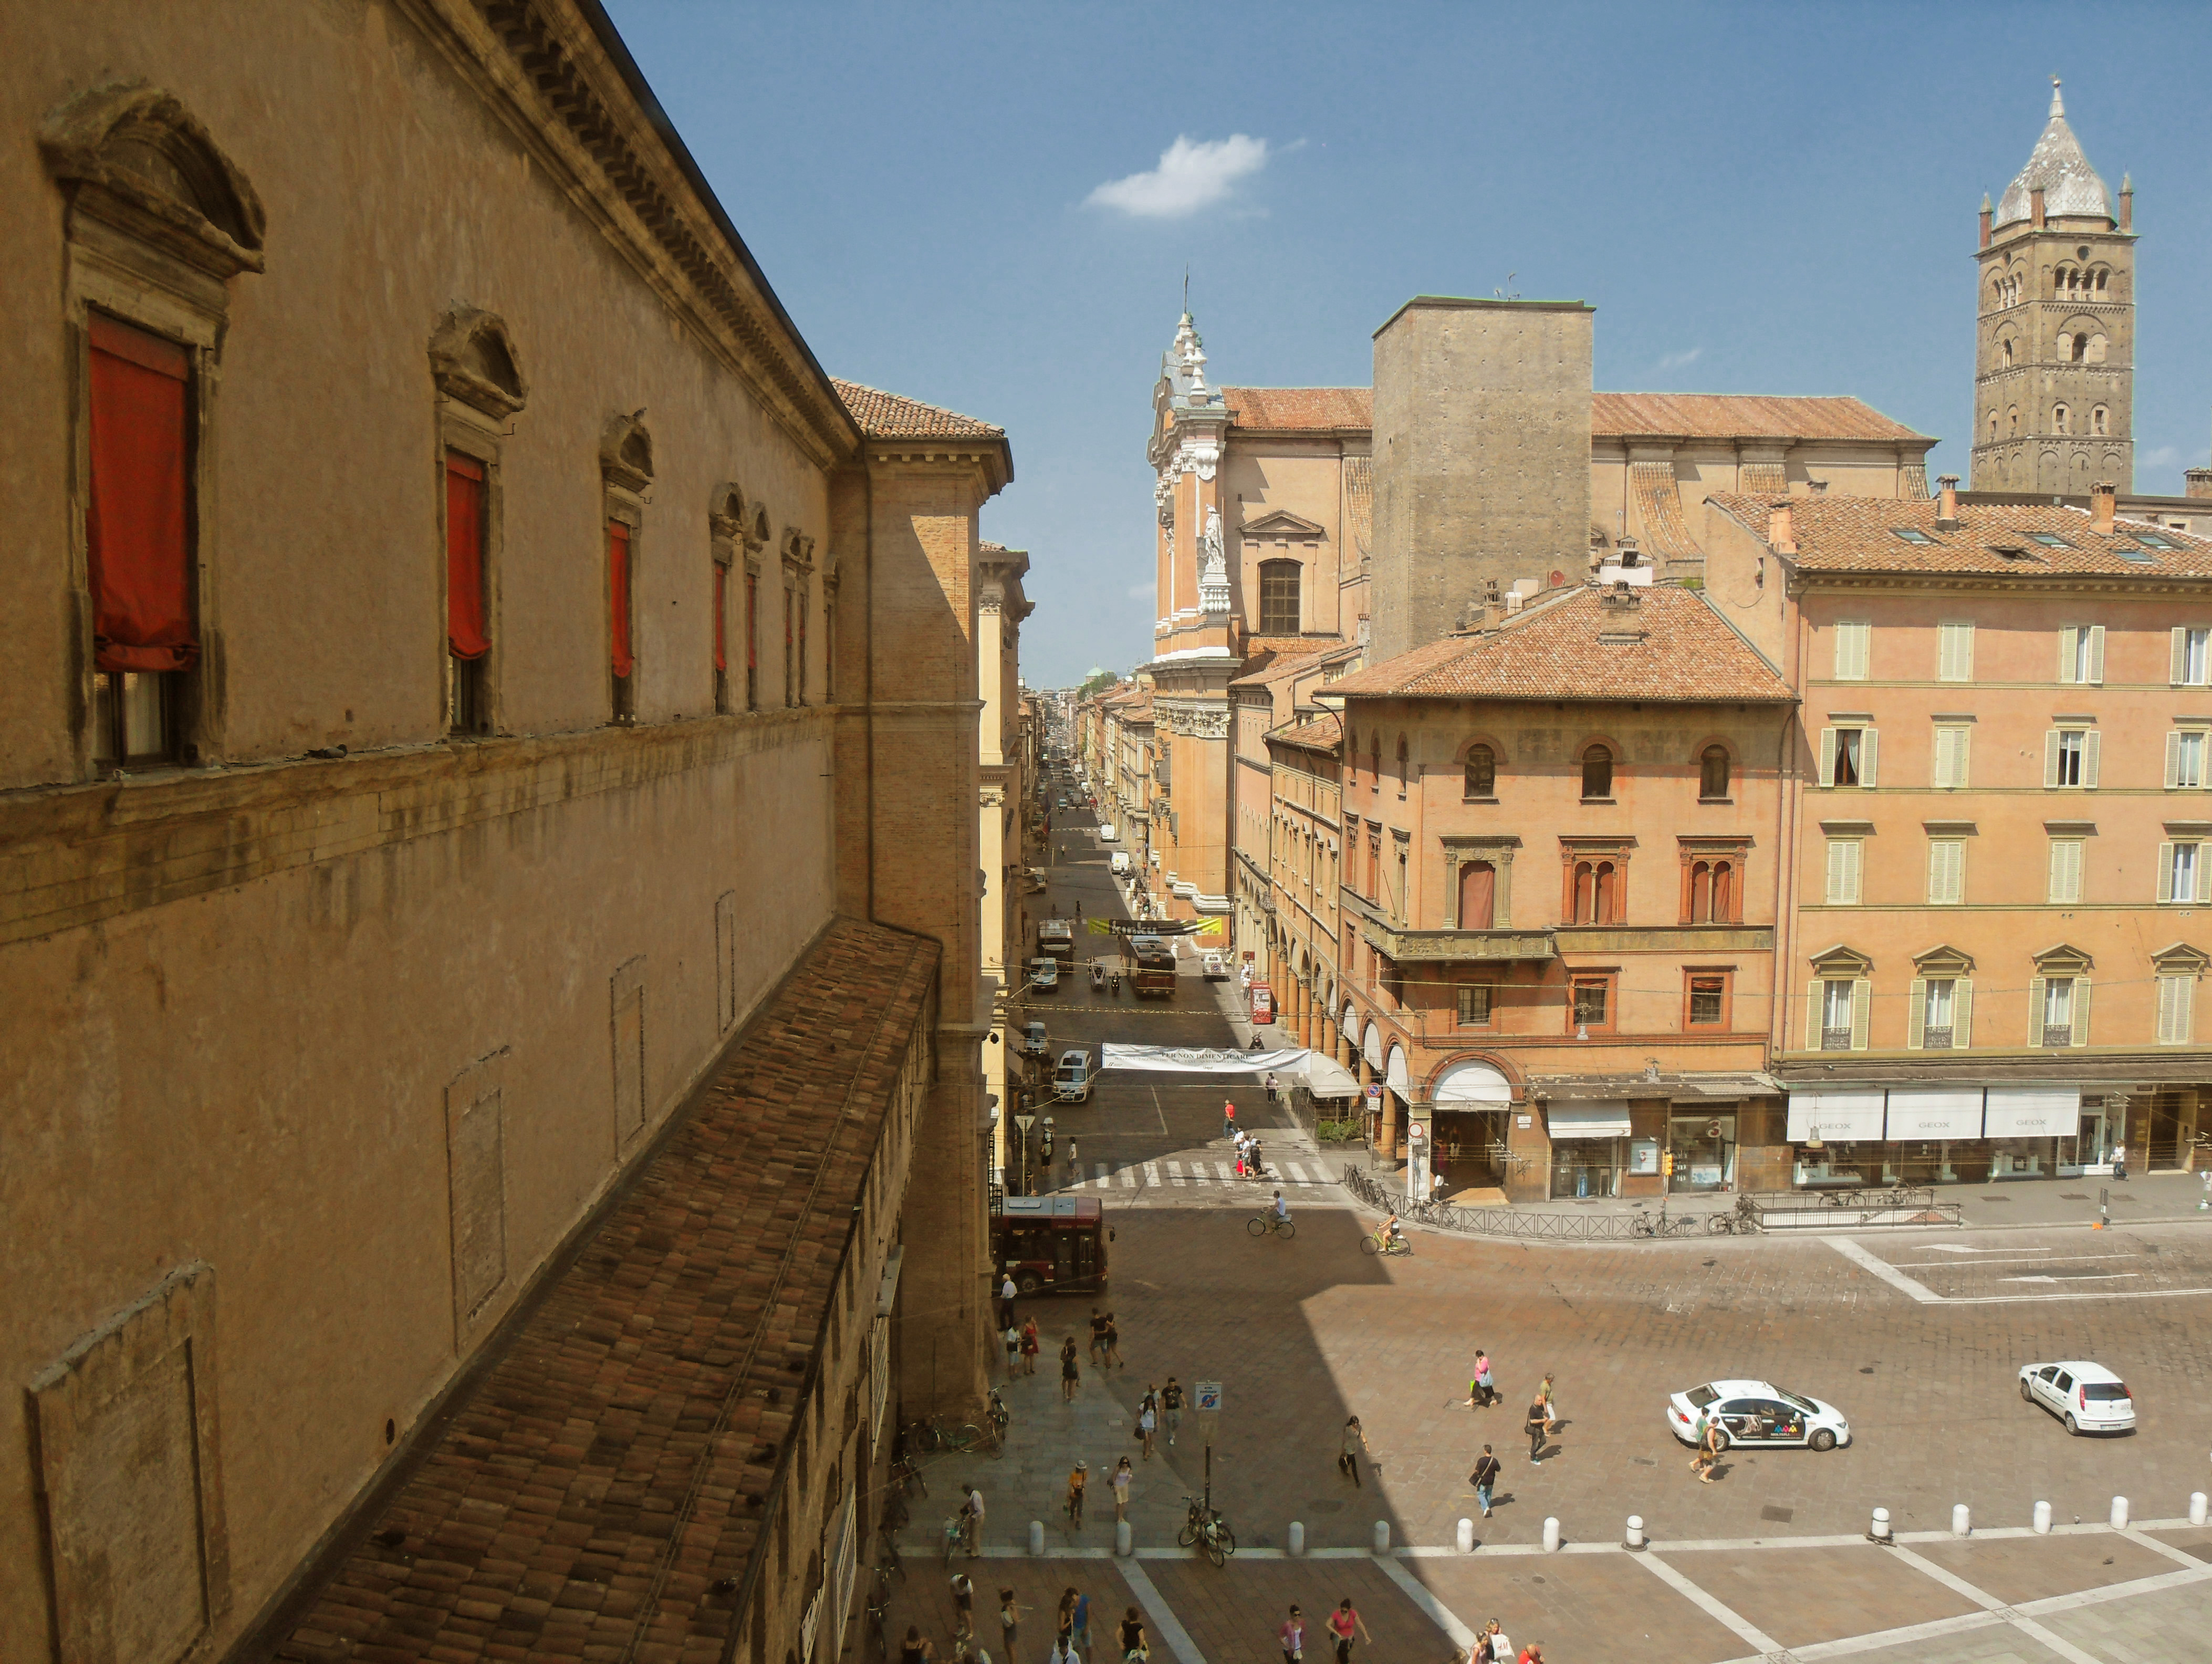 photo: https://upload.wikimedia.org/wikipedia/commons/1/1c/Piazza_Maggiore_da_Palazzo_d%27Accursio.jpg